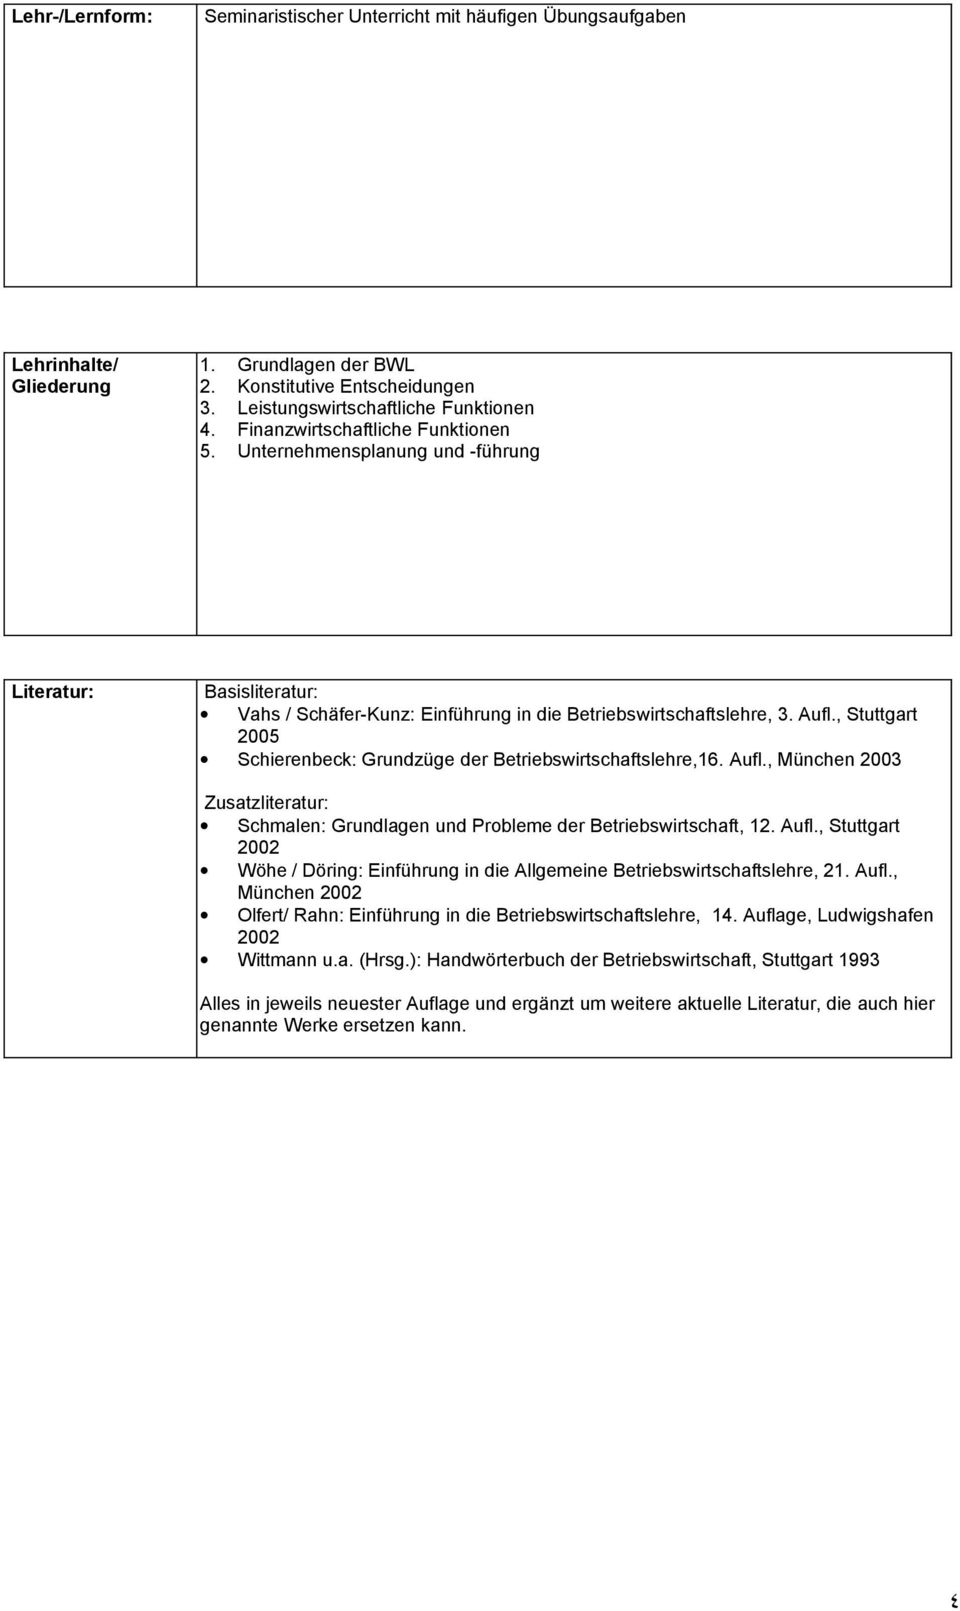 , Stuttgart 2005 Schierenbeck: Grundzüge der Betriebswirtschaftslehre,16. Aufl., München 2003 Zusatzliteratur: Schmalen: Grundlagen und Probleme der Betriebswirtschaft, 12. Aufl., Stuttgart 2002 Wöhe / Döring: Einführung in die Allgemeine Betriebswirtschaftslehre, 21.